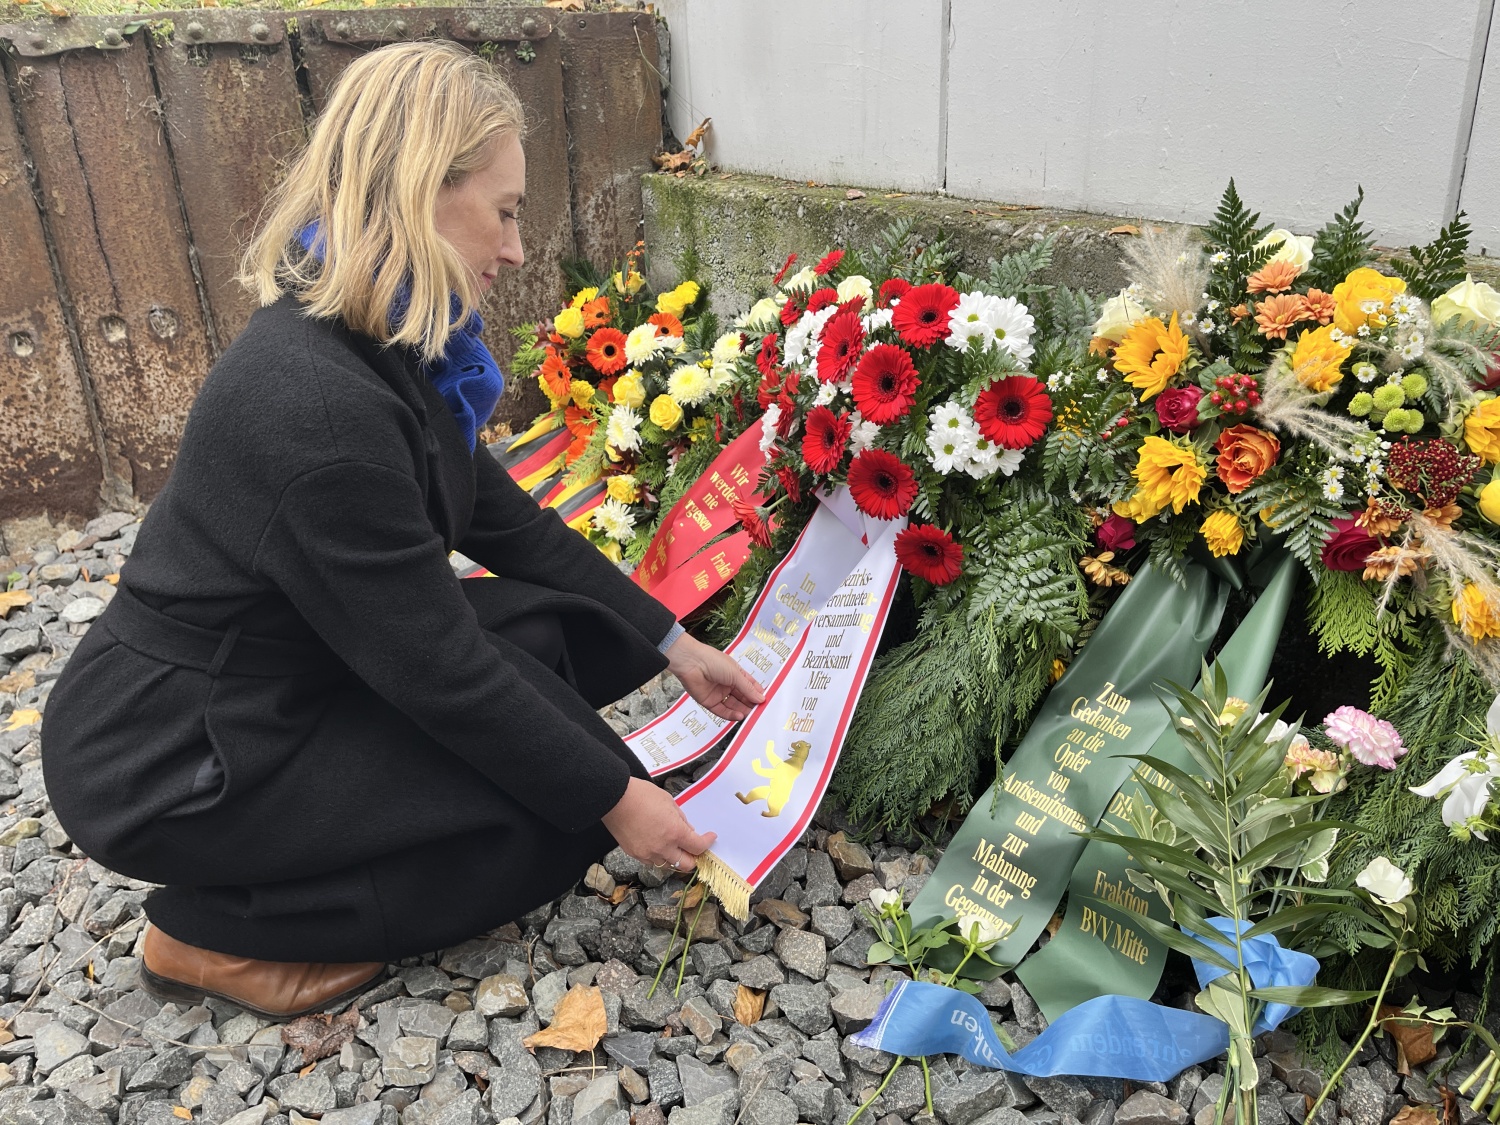 Bezirksstadträtin Dr. Almut Neumann richtet die Kranzschleife bei der Gedenkfeier zur Erinnerung an die Reichspogromnacht am Gedenkort Güterbahnhof Moabit.